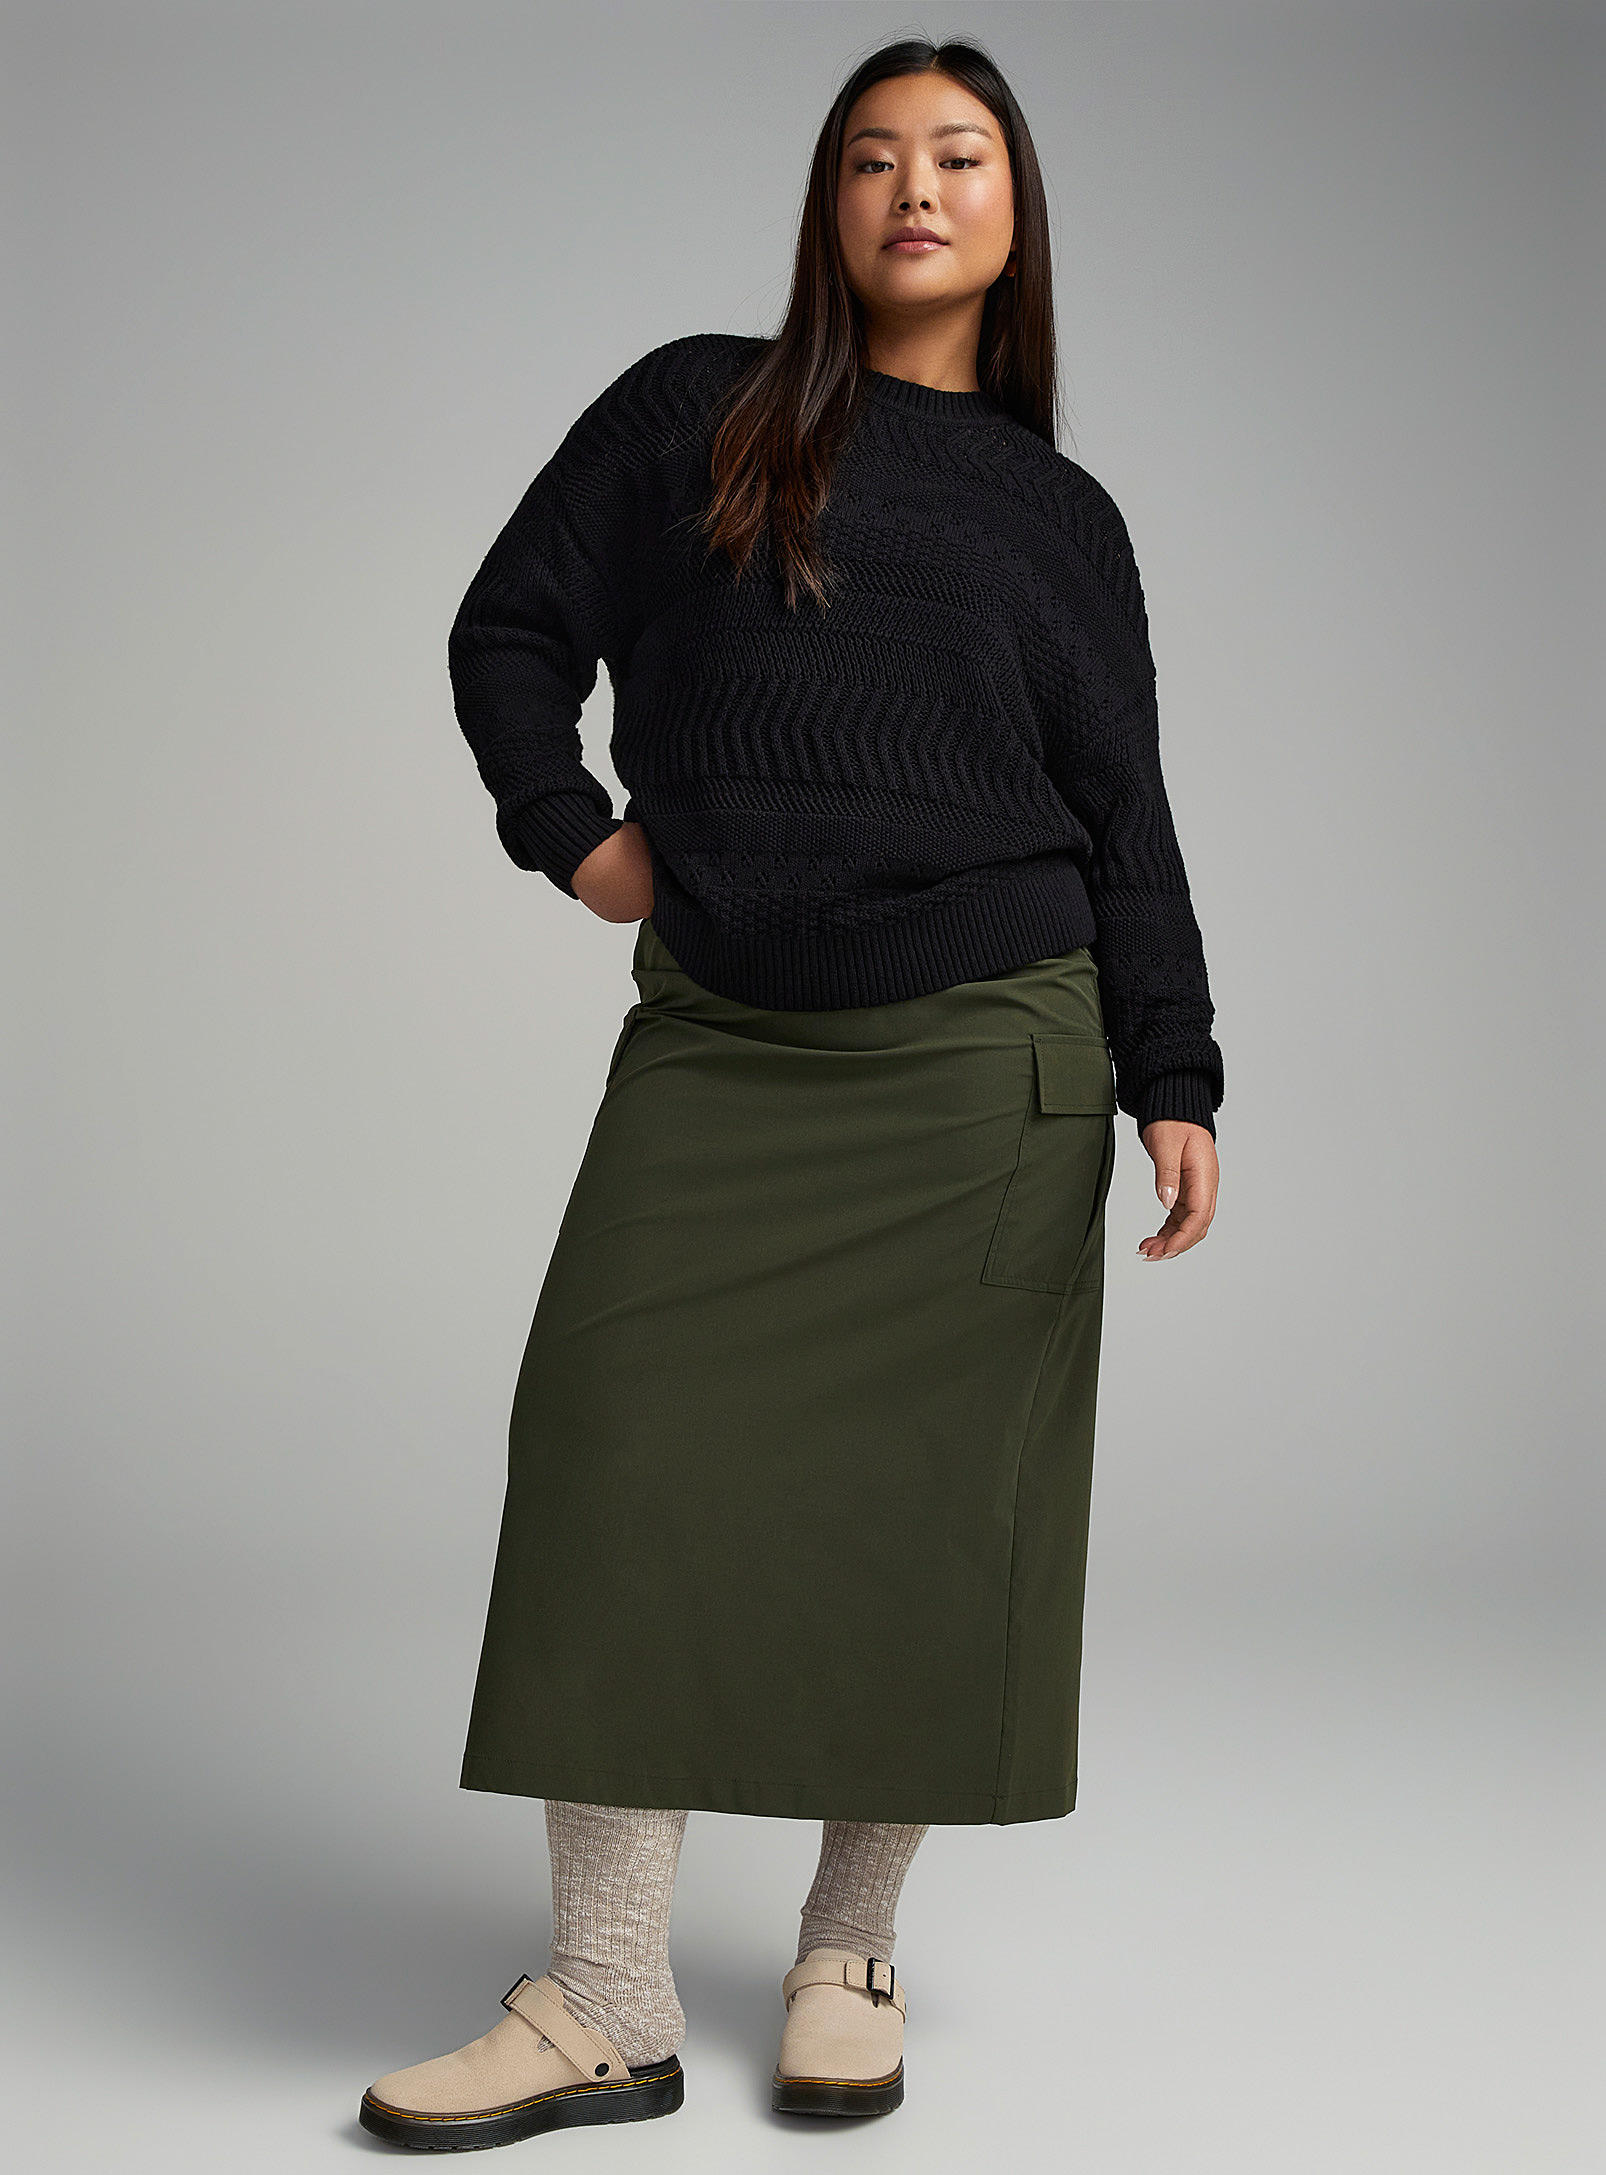 Twik - Women's Openwork knit sweater